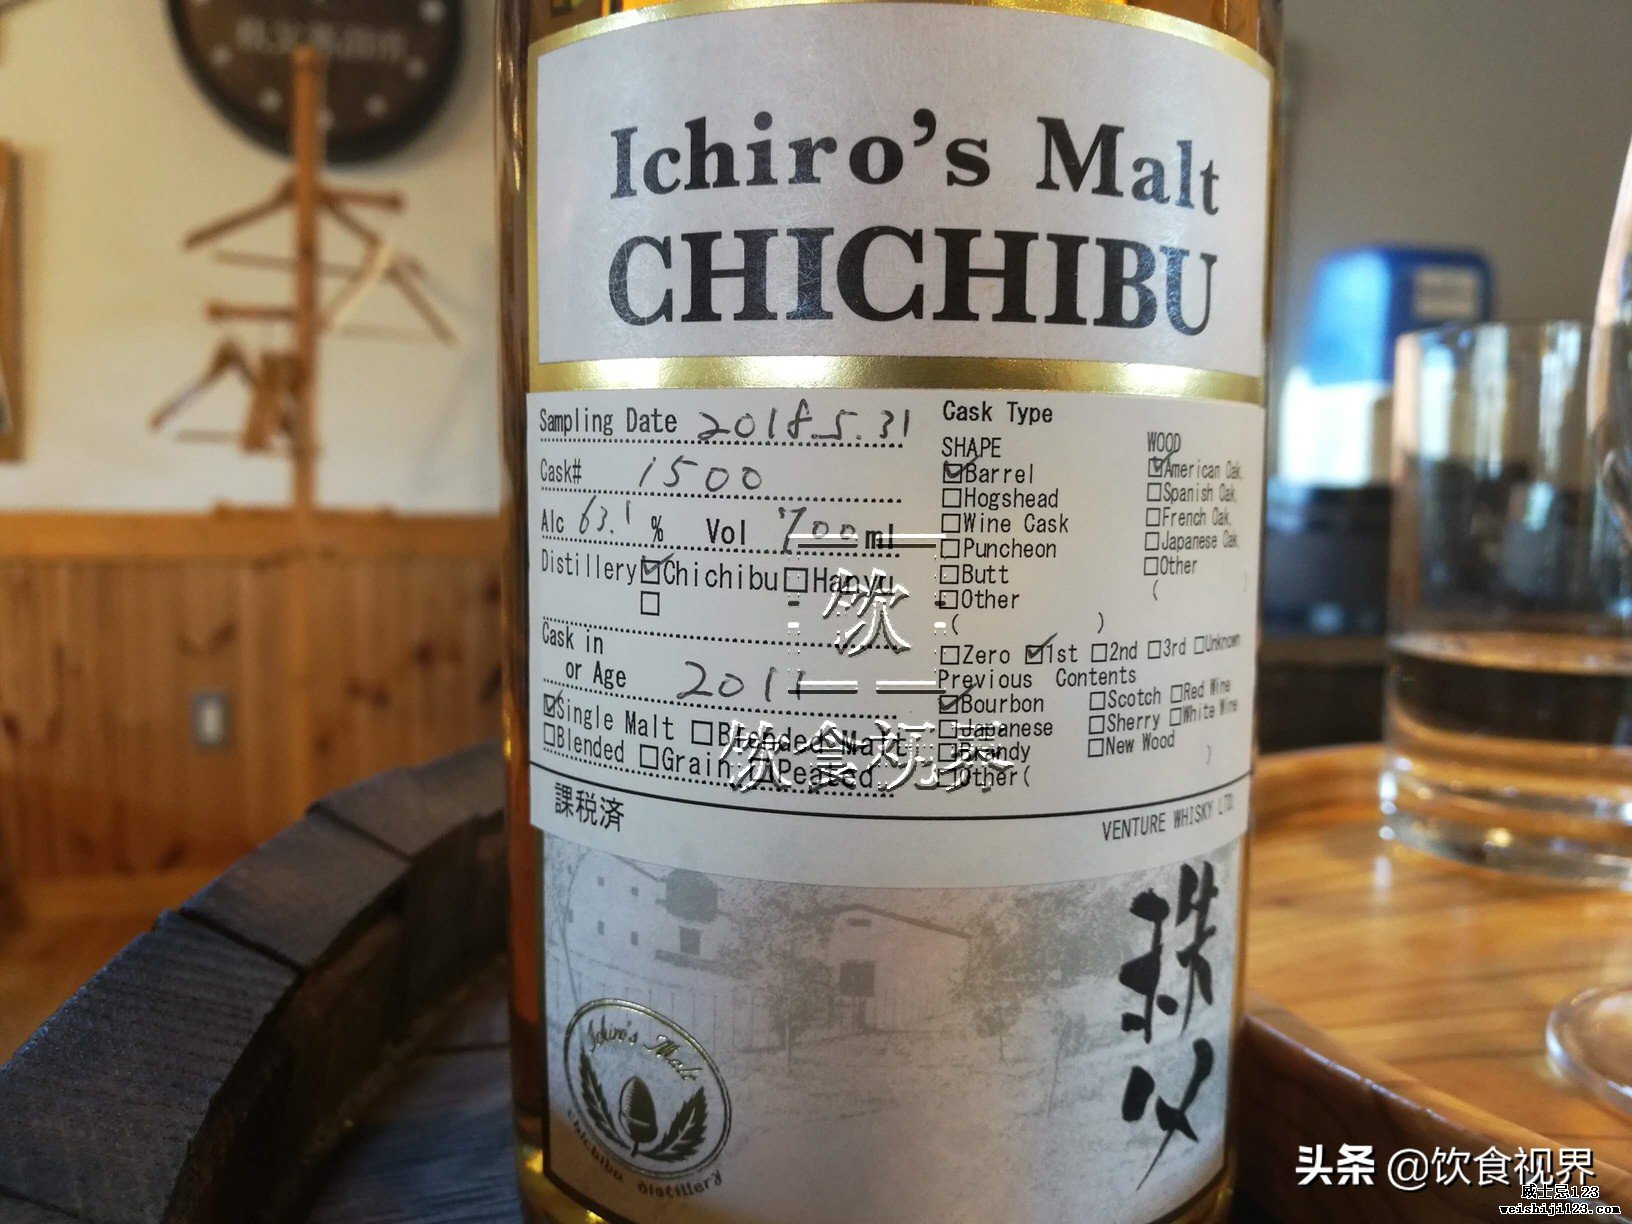 开眼了！这套秩父(Chichibu)威士忌如果能买到的话可不得了